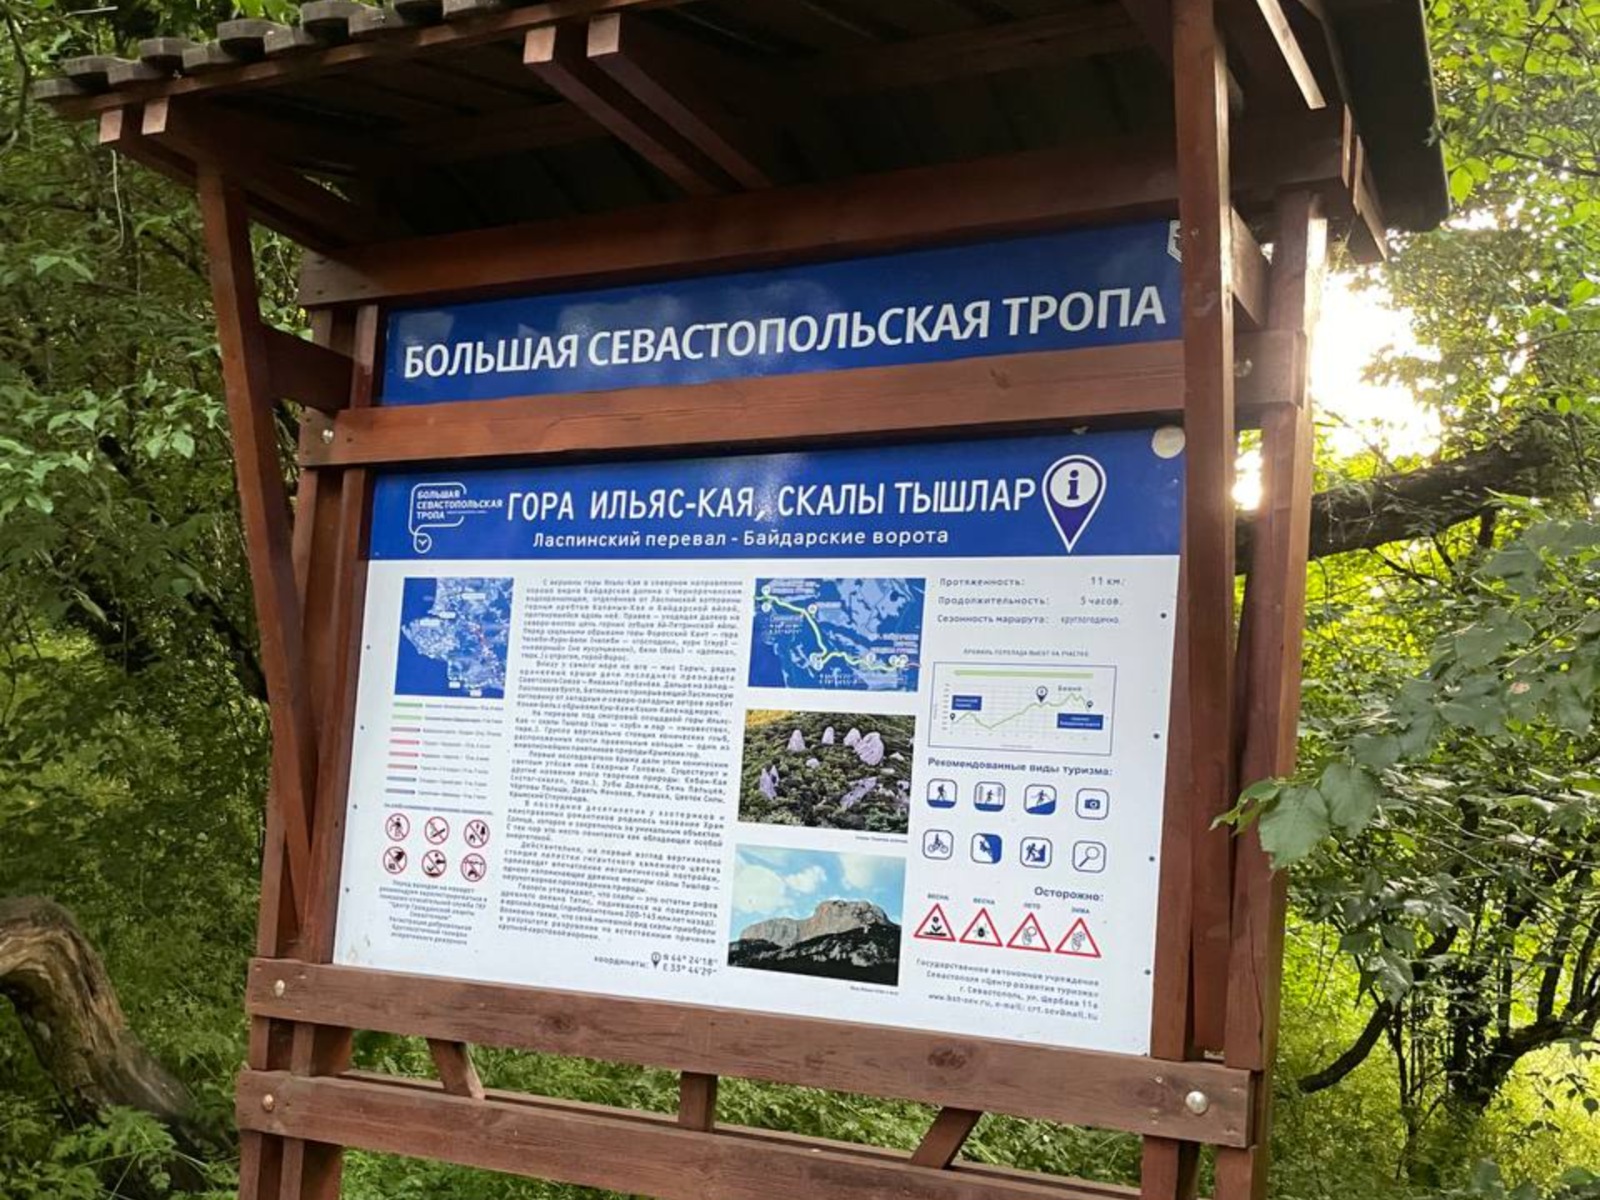 Севастопольская тропа